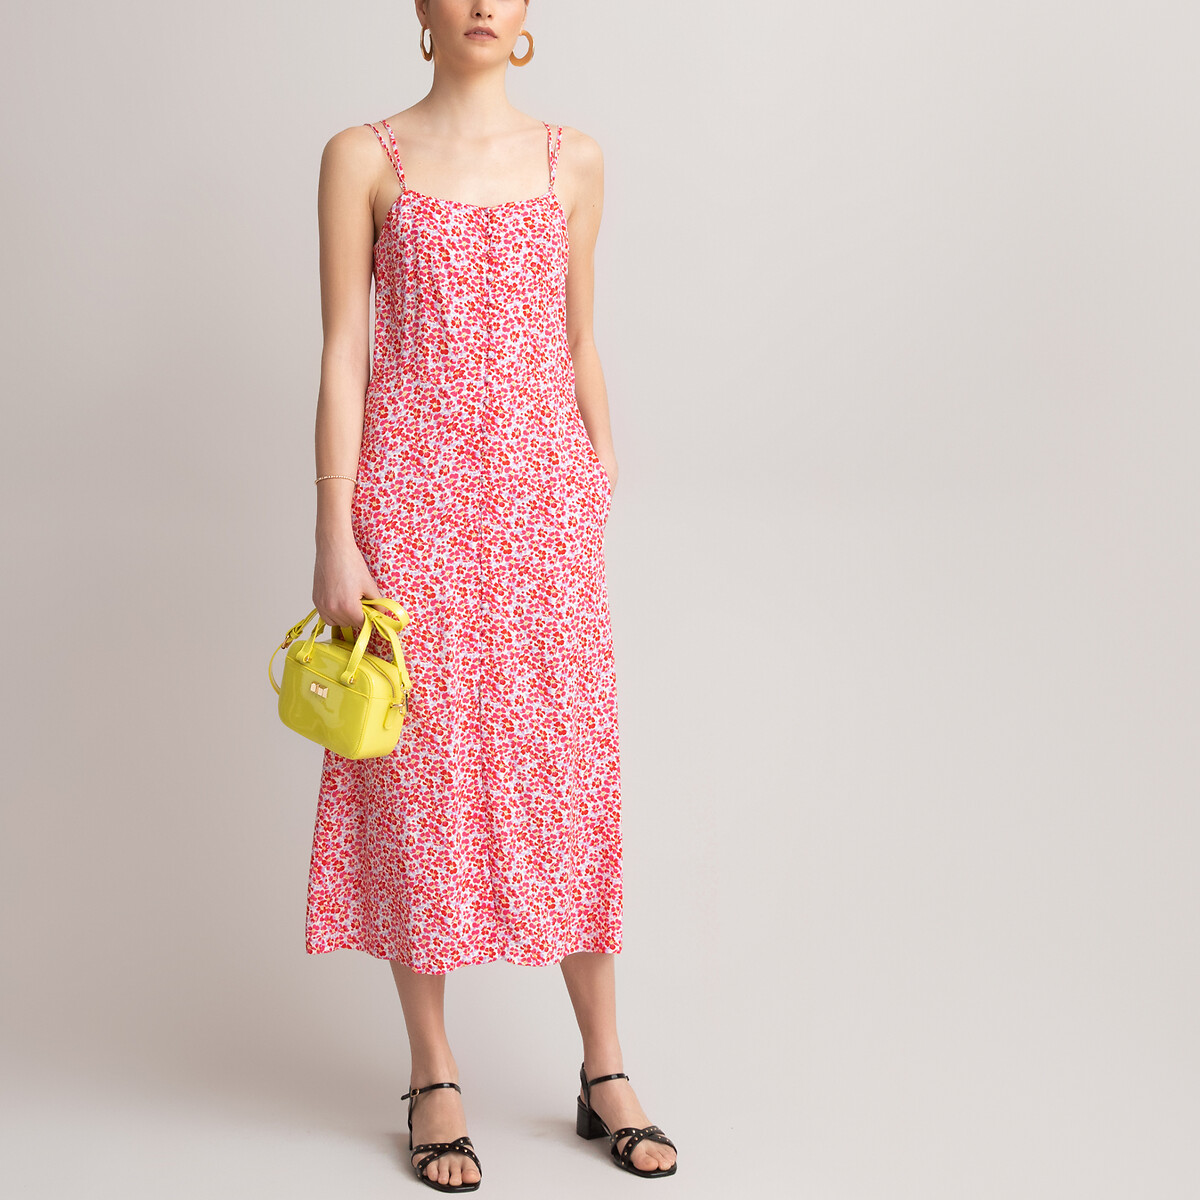 Платье LaRedoute Длинное прямое  с цветочным принтом 34 (FR) - 40 (RUS) розовый, размер 34 (FR) - 40 (RUS) Длинное прямое  с цветочным принтом 34 (FR) - 40 (RUS) розовый - фото 2